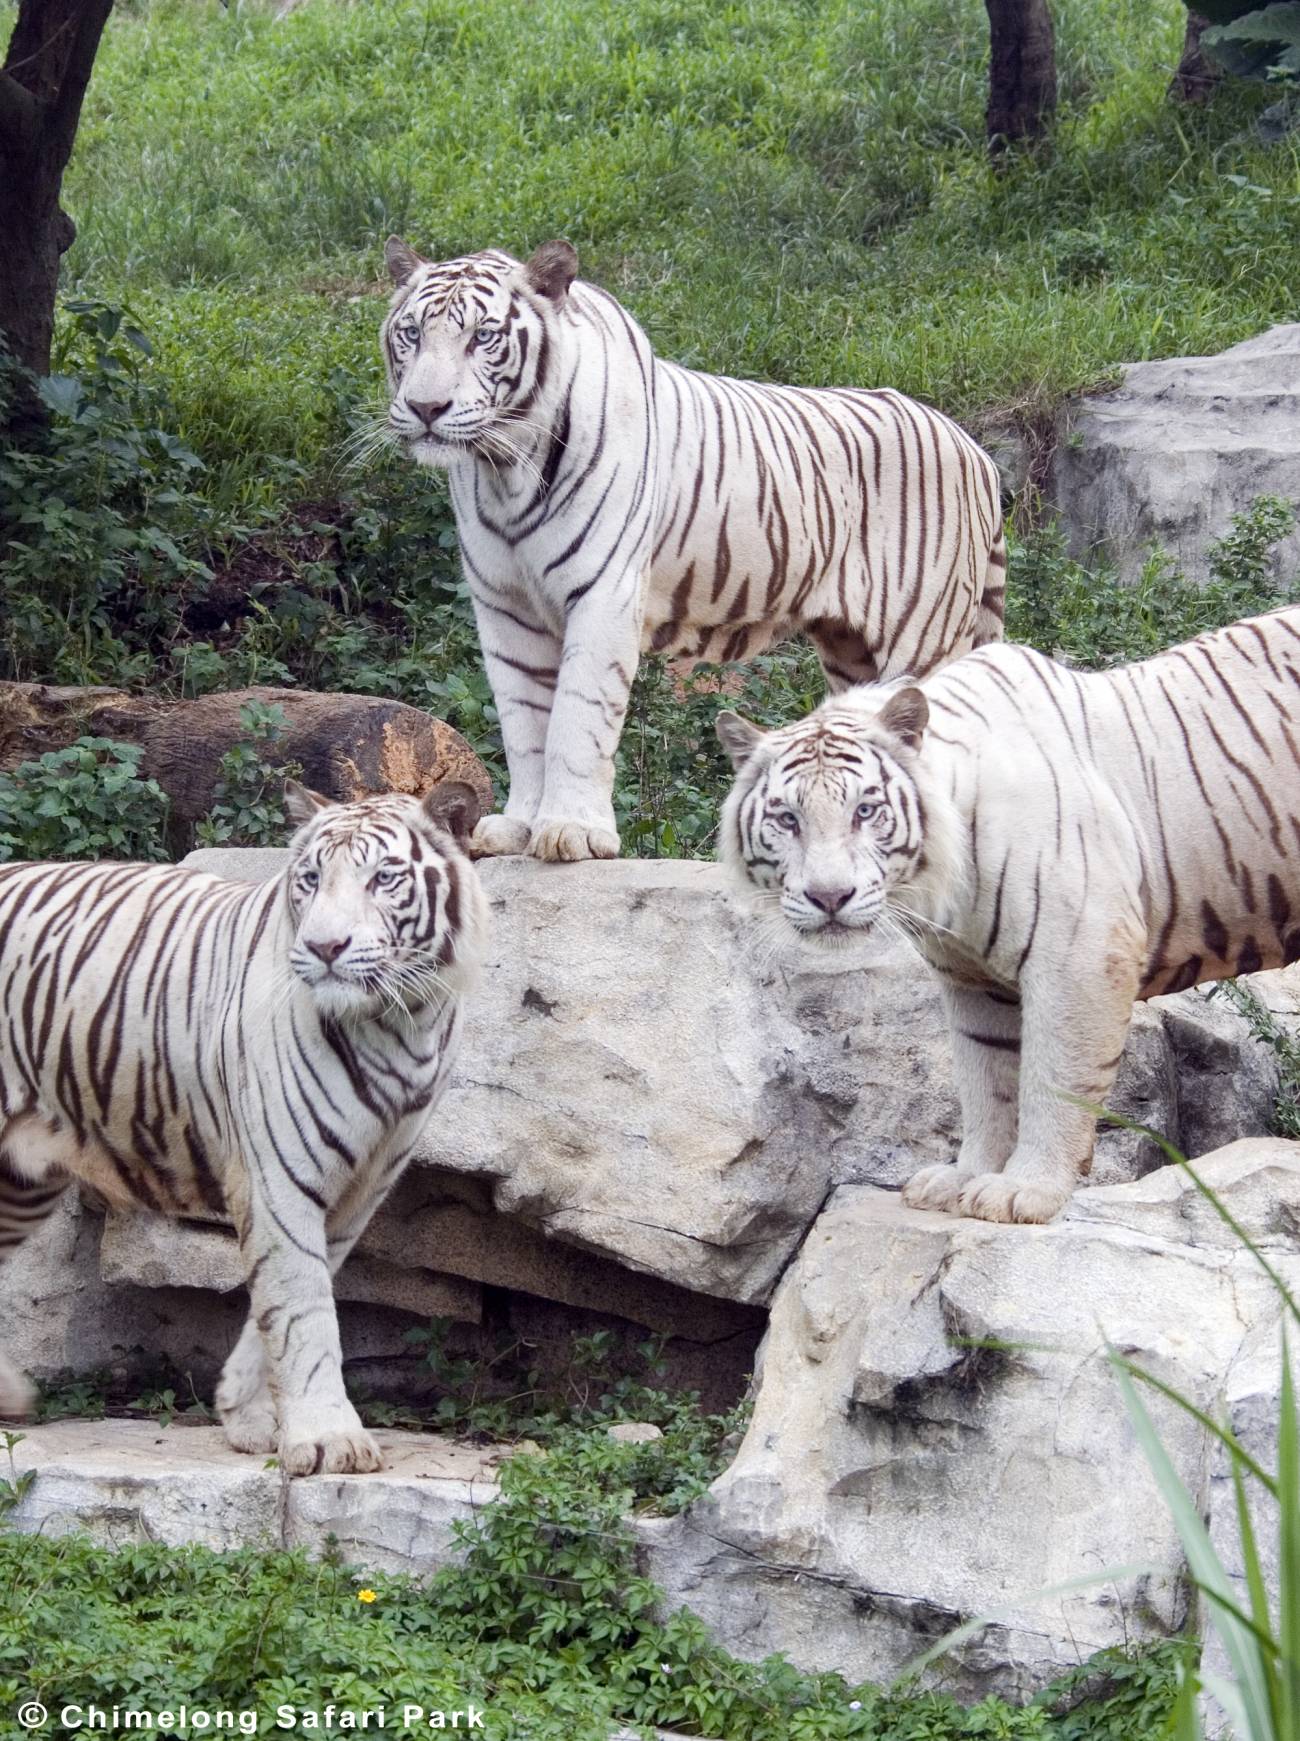 Imagem relacionada  Imagenes de tigres, Tigre blanco, Fotos de